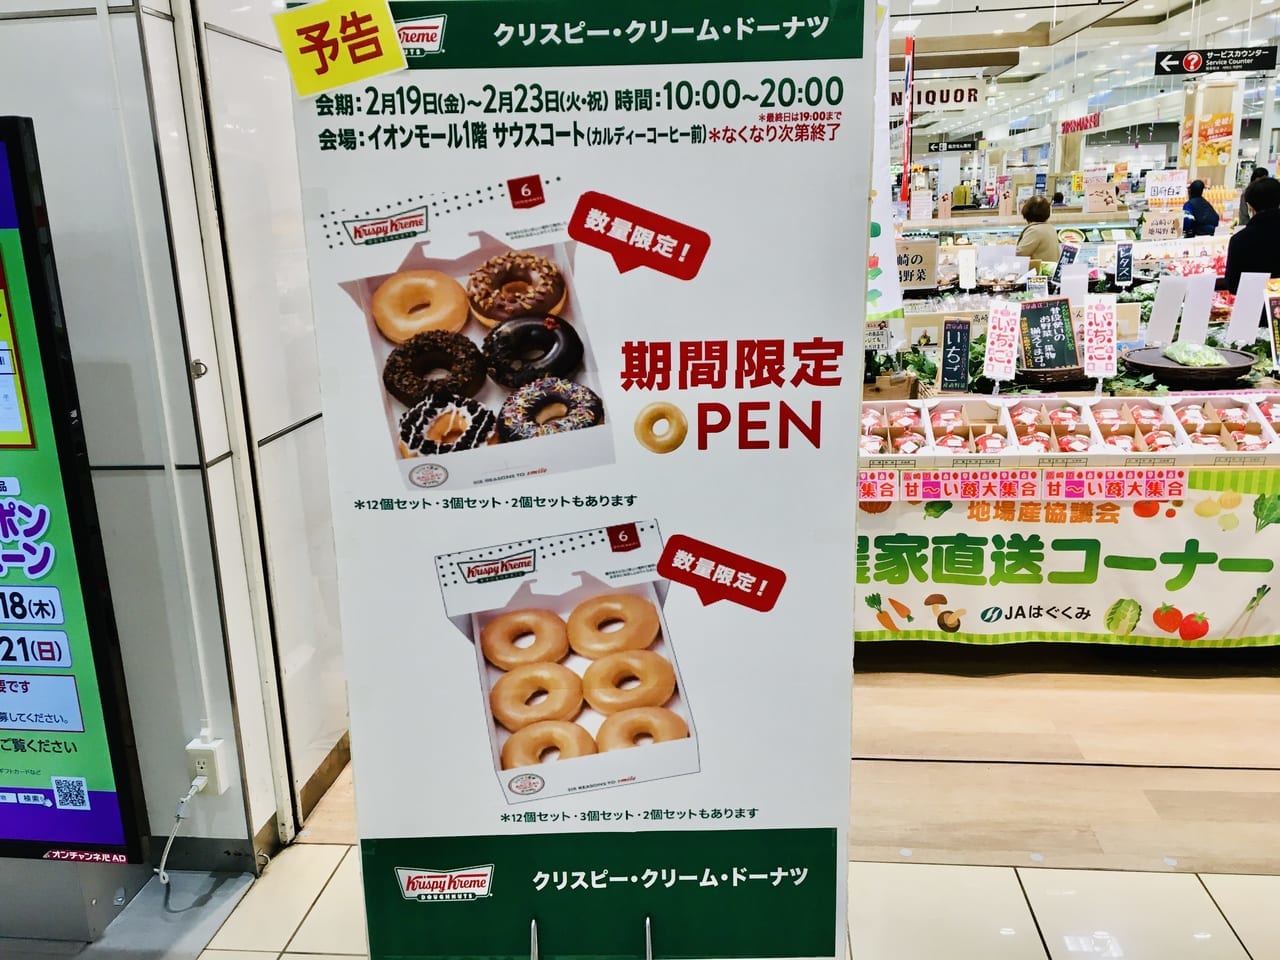 「イオンモール高崎」で期間限定オープンする「クリスピークリームドーナツ」のお知らせ